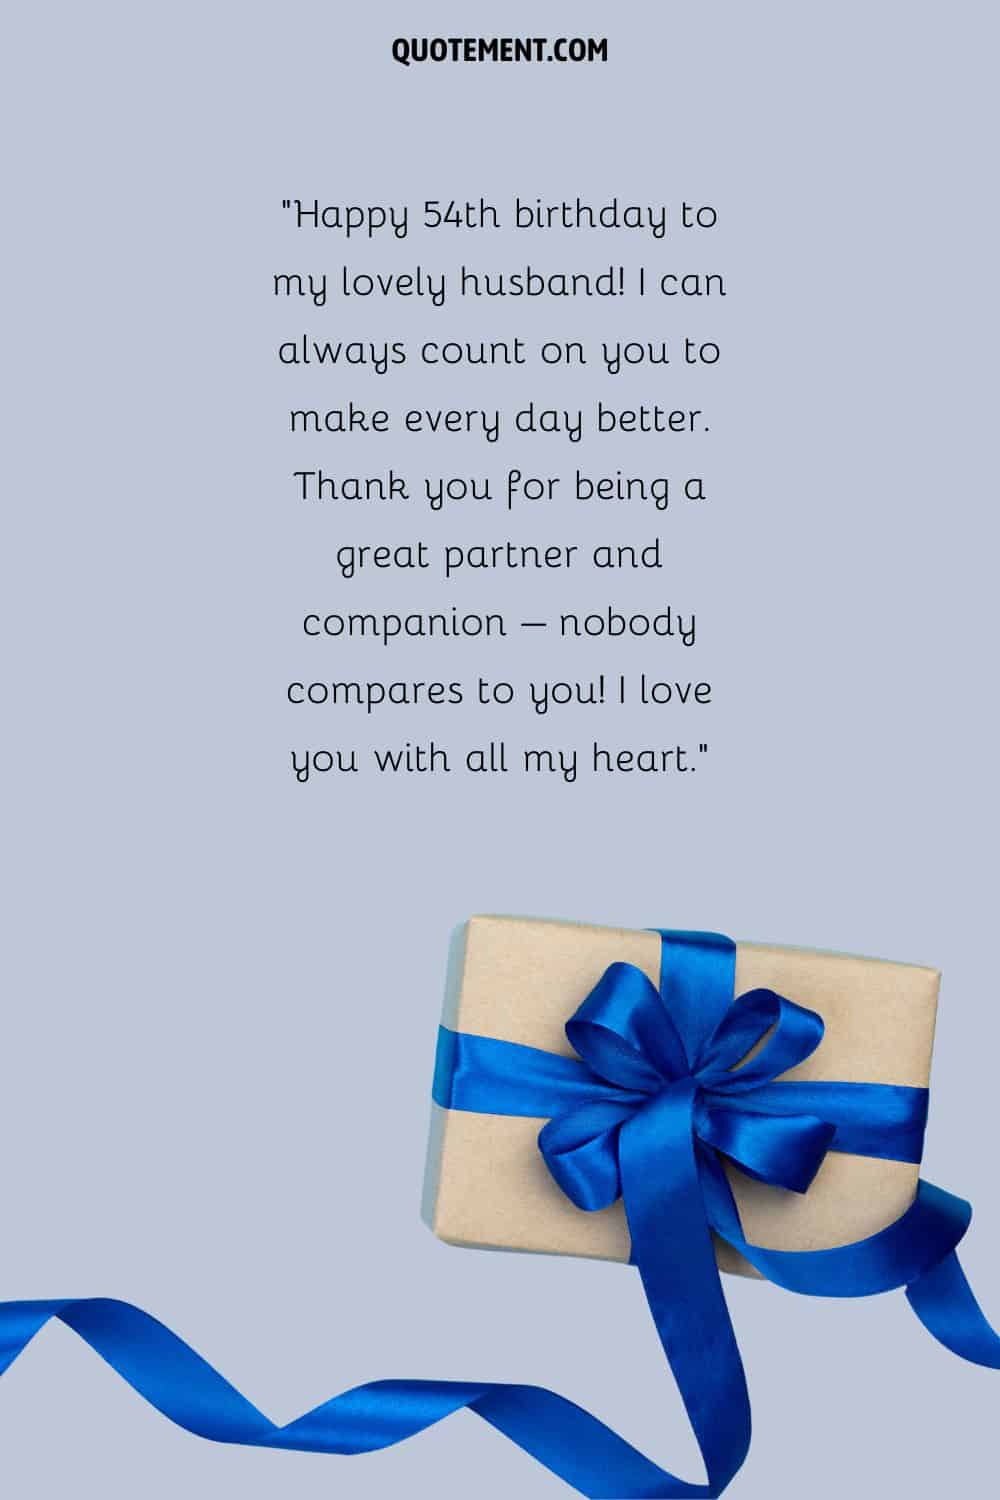 Precioso mensaje para el 54 cumpleaños de un marido y un regalo con un lazo azul debajo